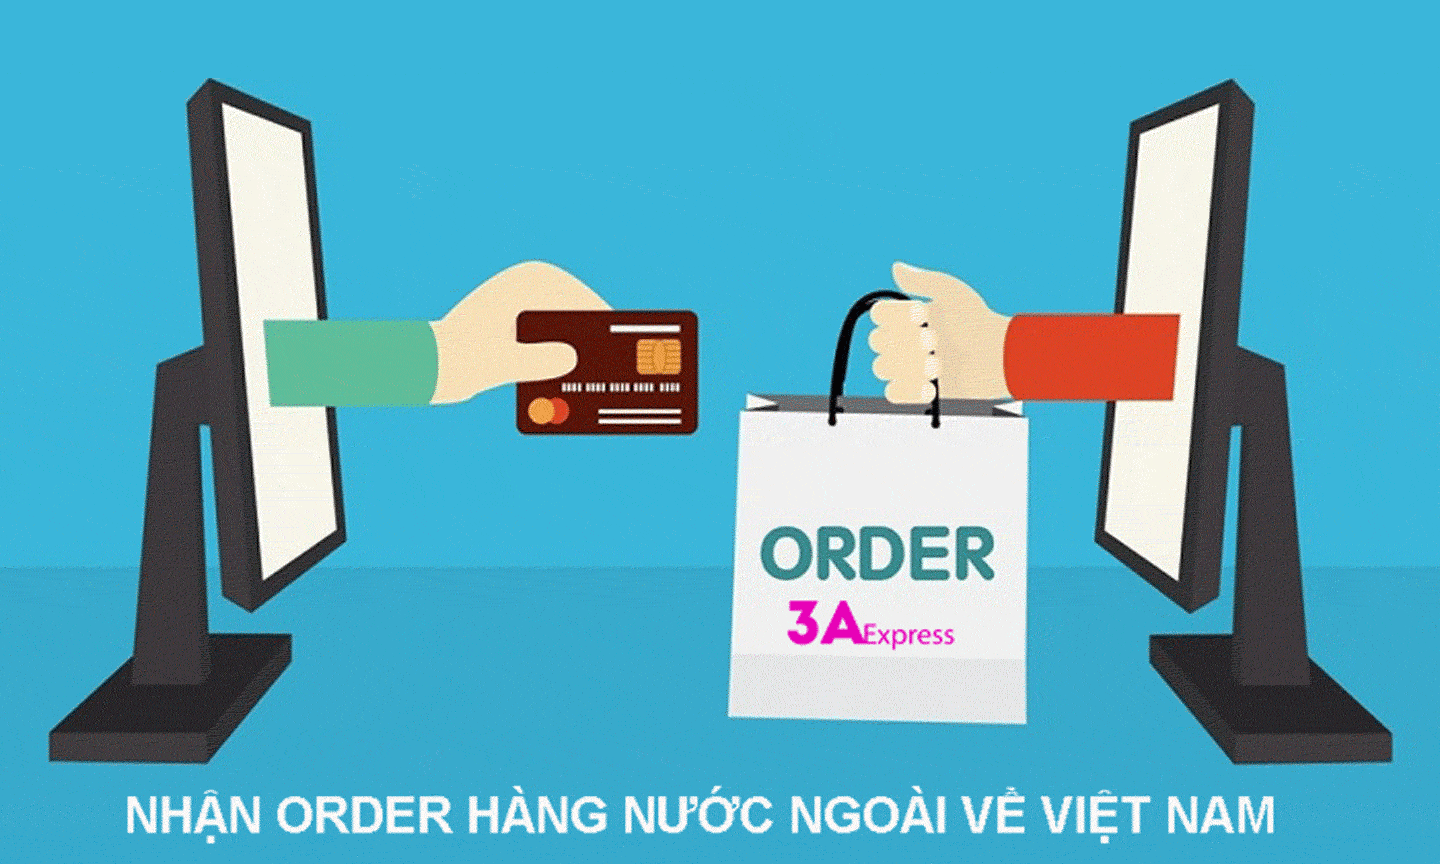 3A Express nhận order hàng từ nước ngoài về Việt Nam.